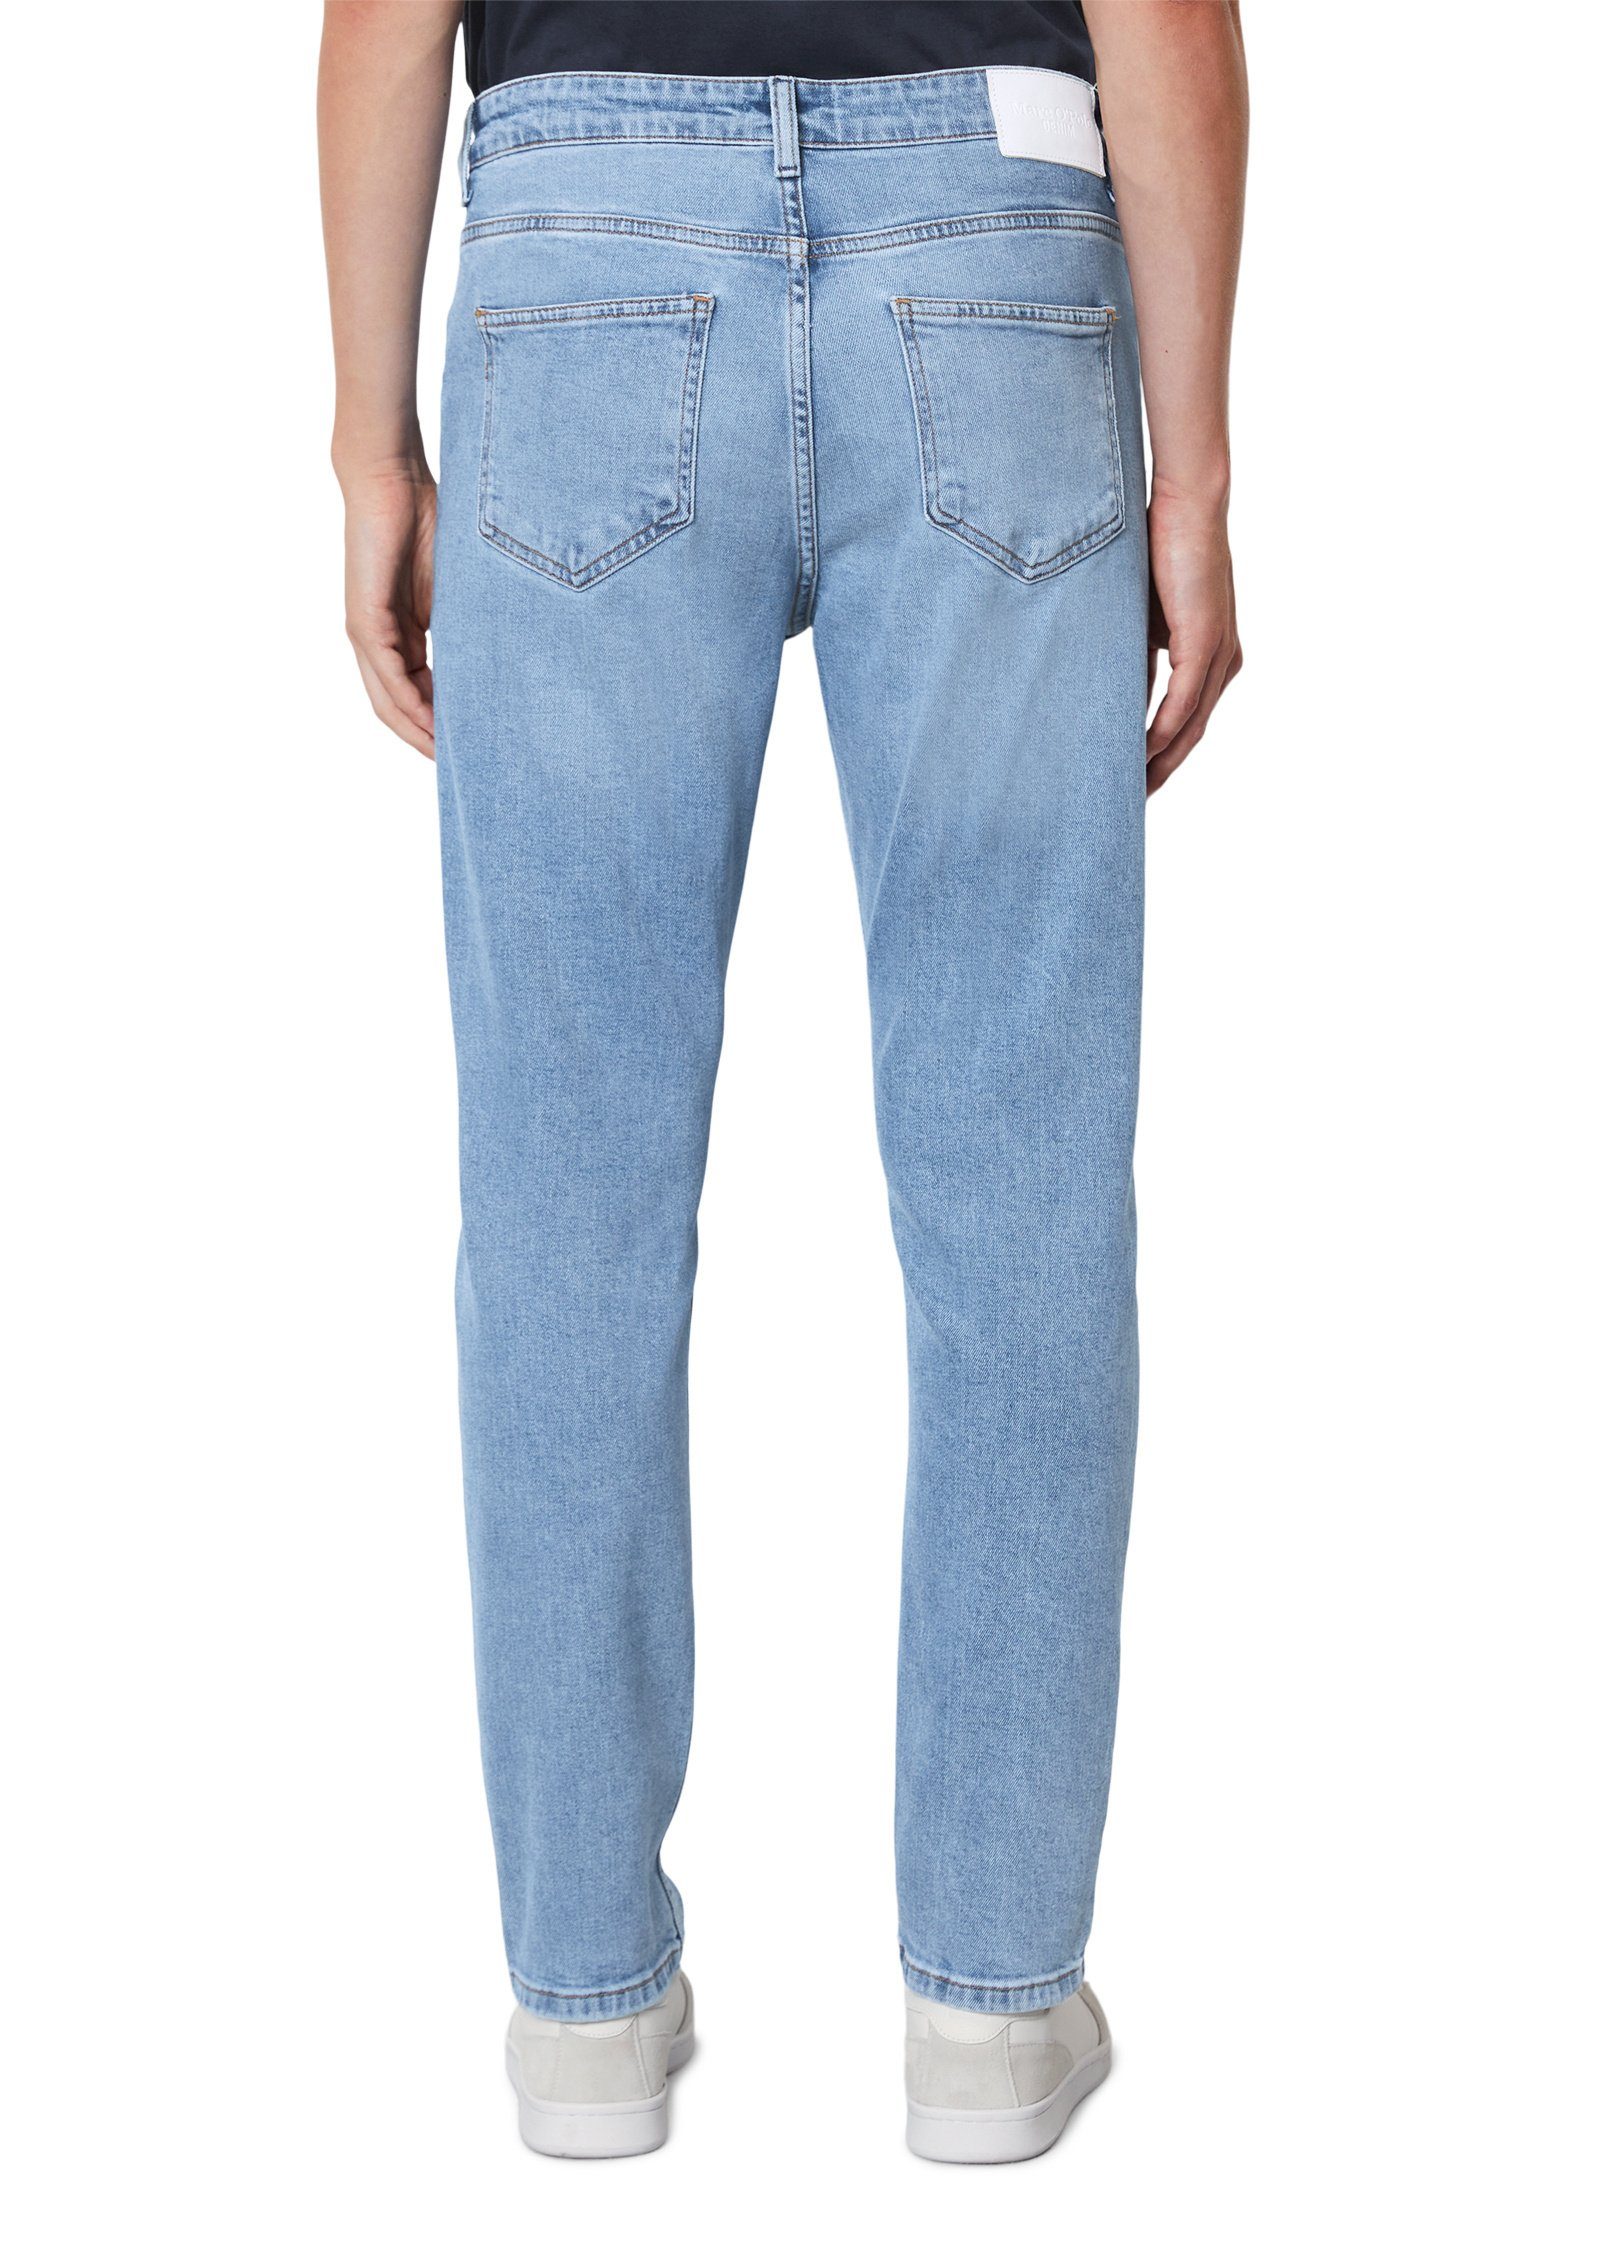 DENIM aus blau Marc O'Polo Bio-Baumwoll-Mix Slim-fit-Jeans